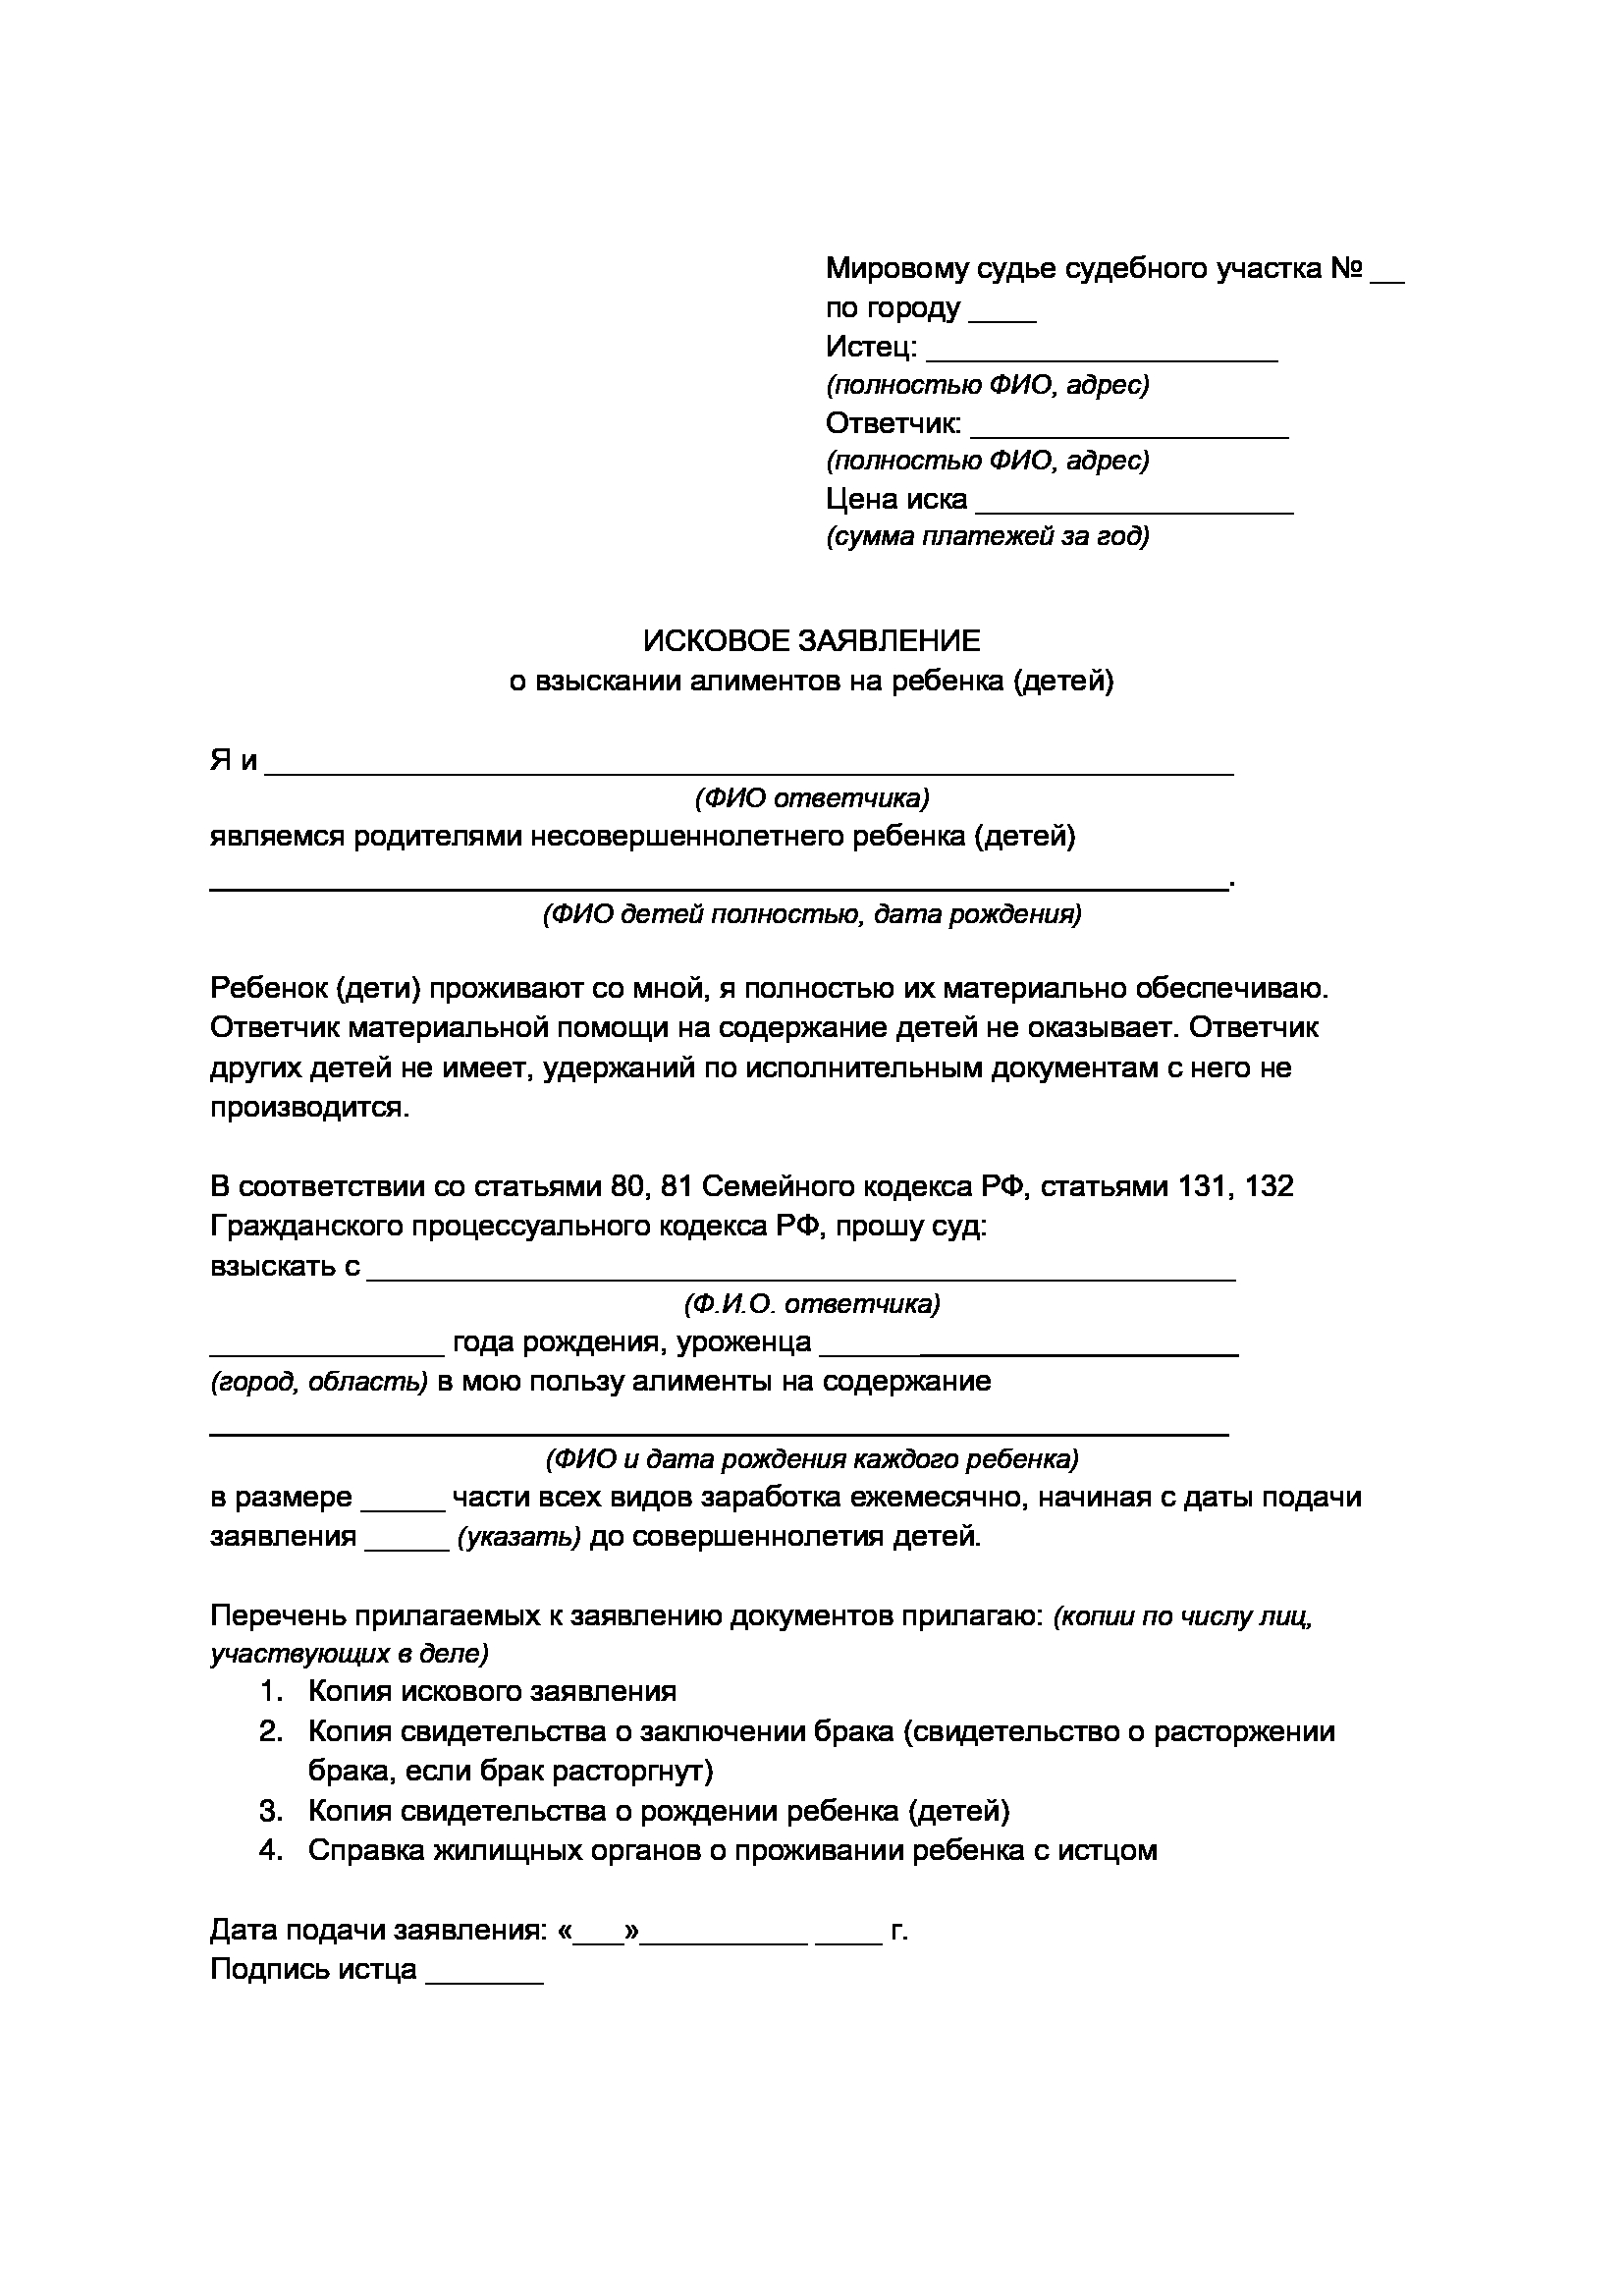 Перечень документов для получения рвп граждан украины обнинск